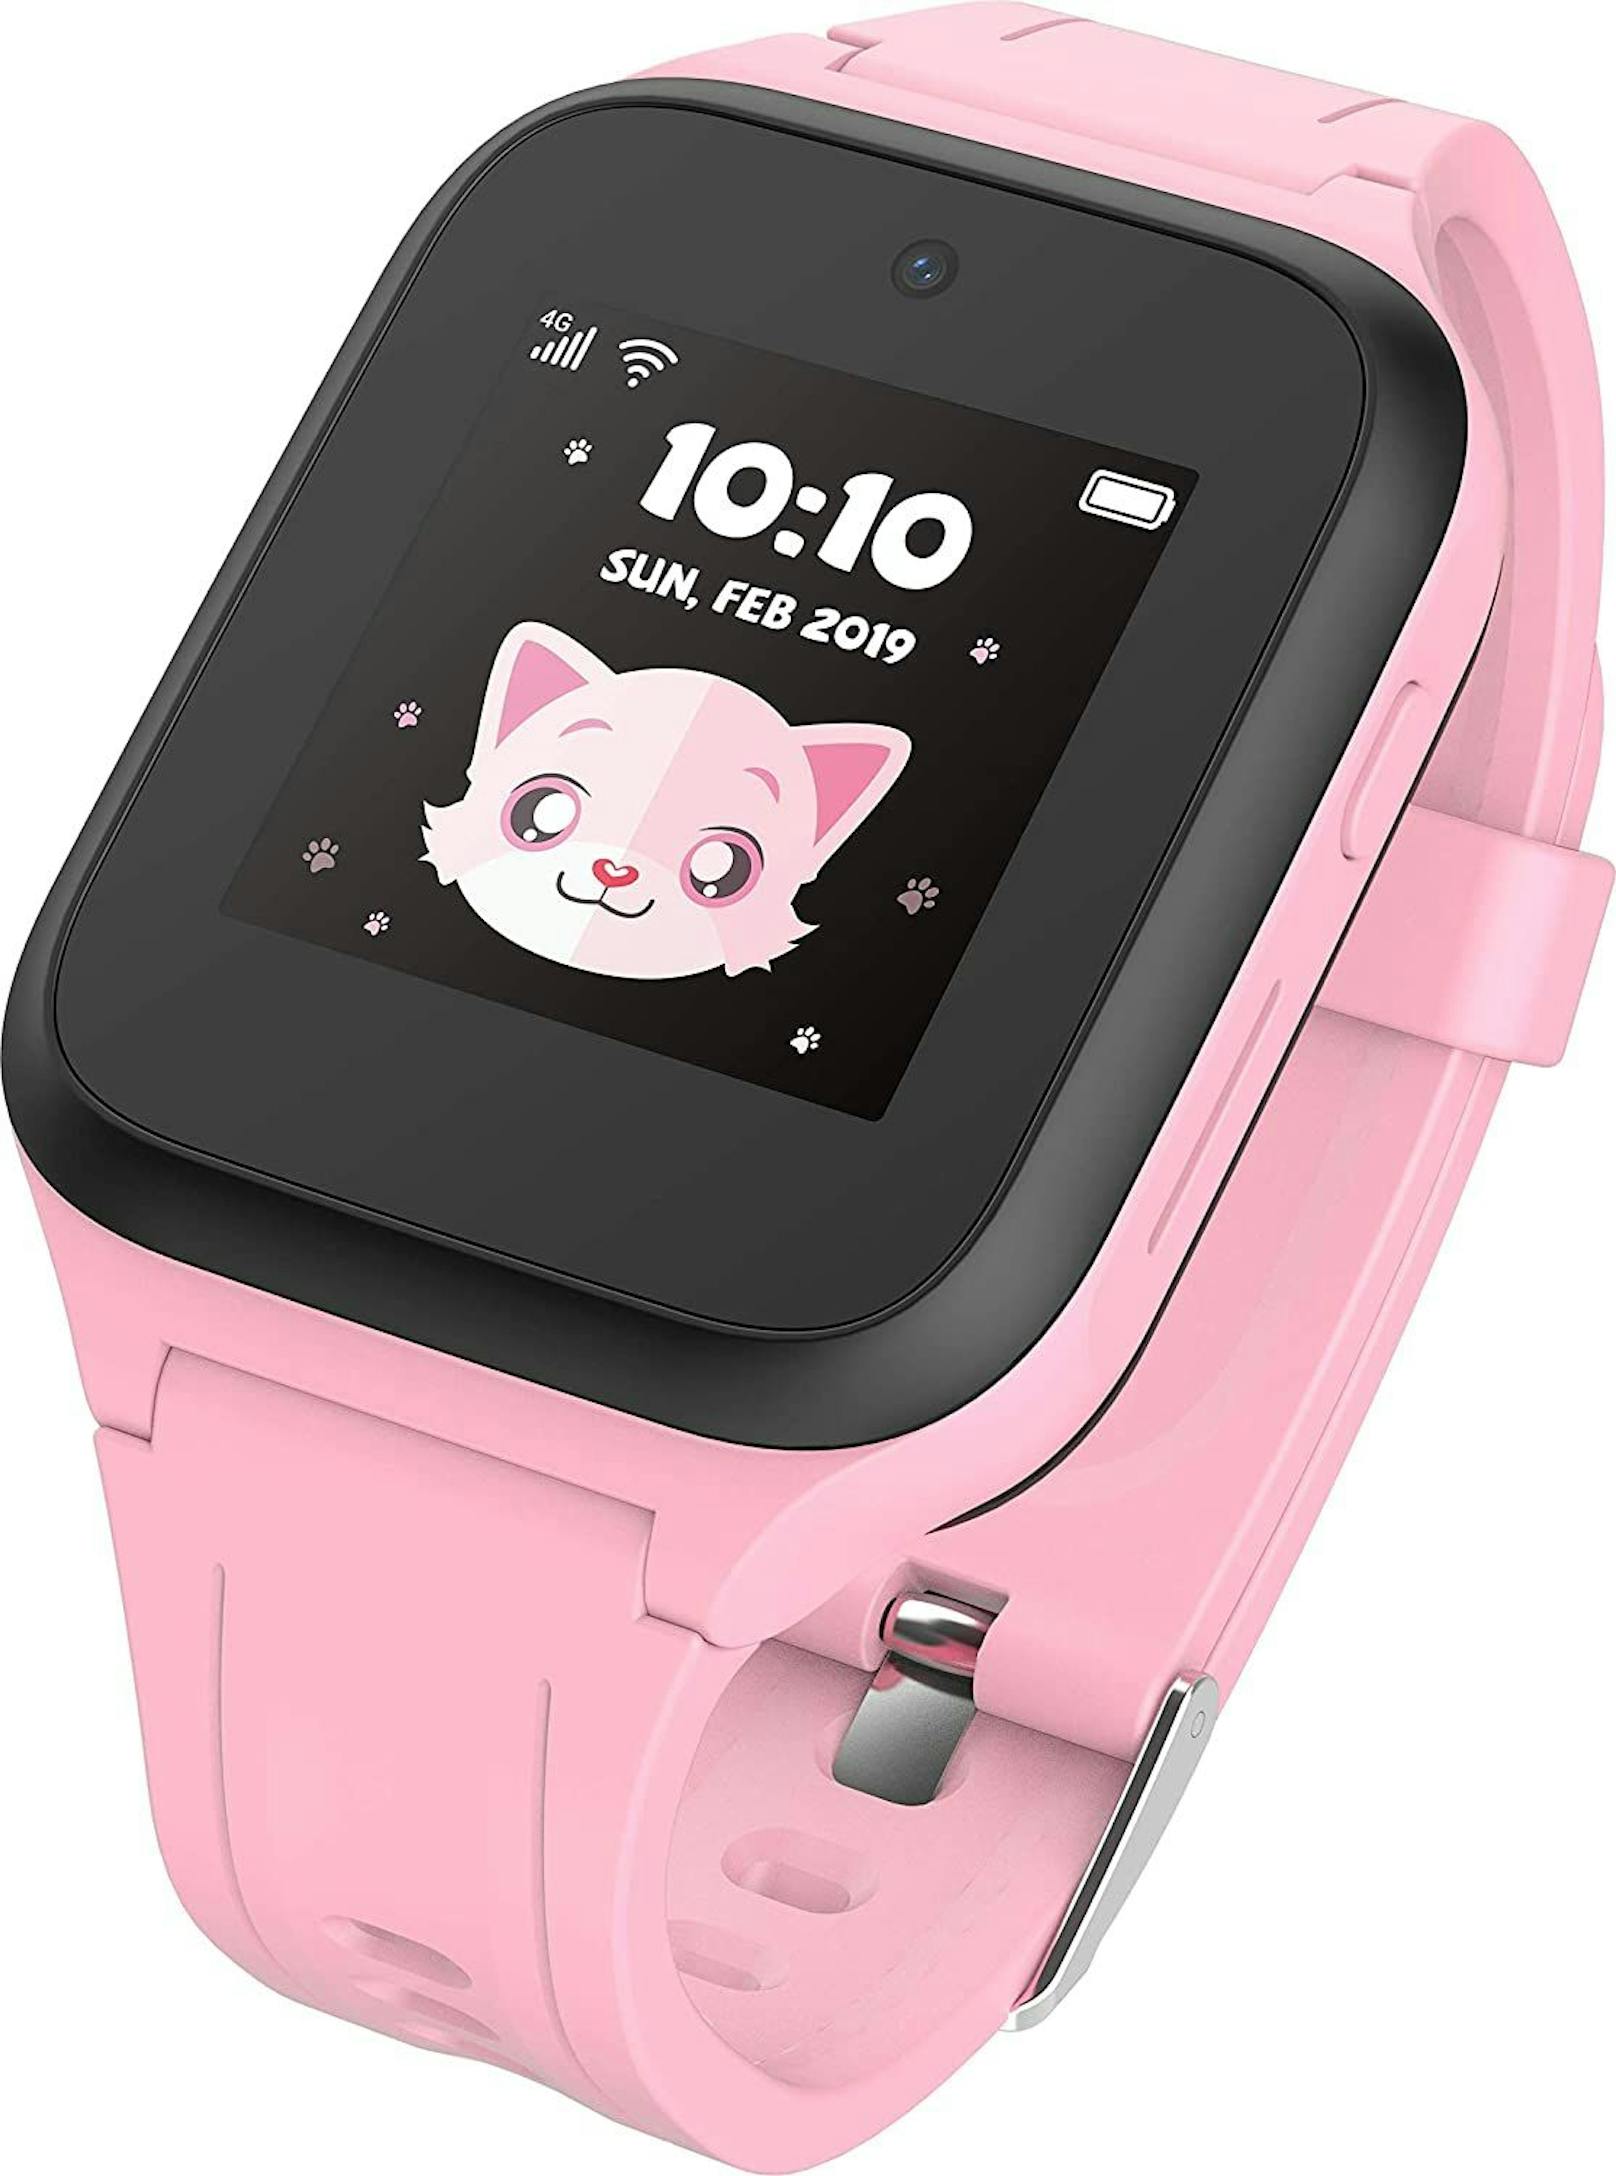 Smartwatch für Kids mit GPS-Standort, SOS-Knopf und Telefonie-Funktion.